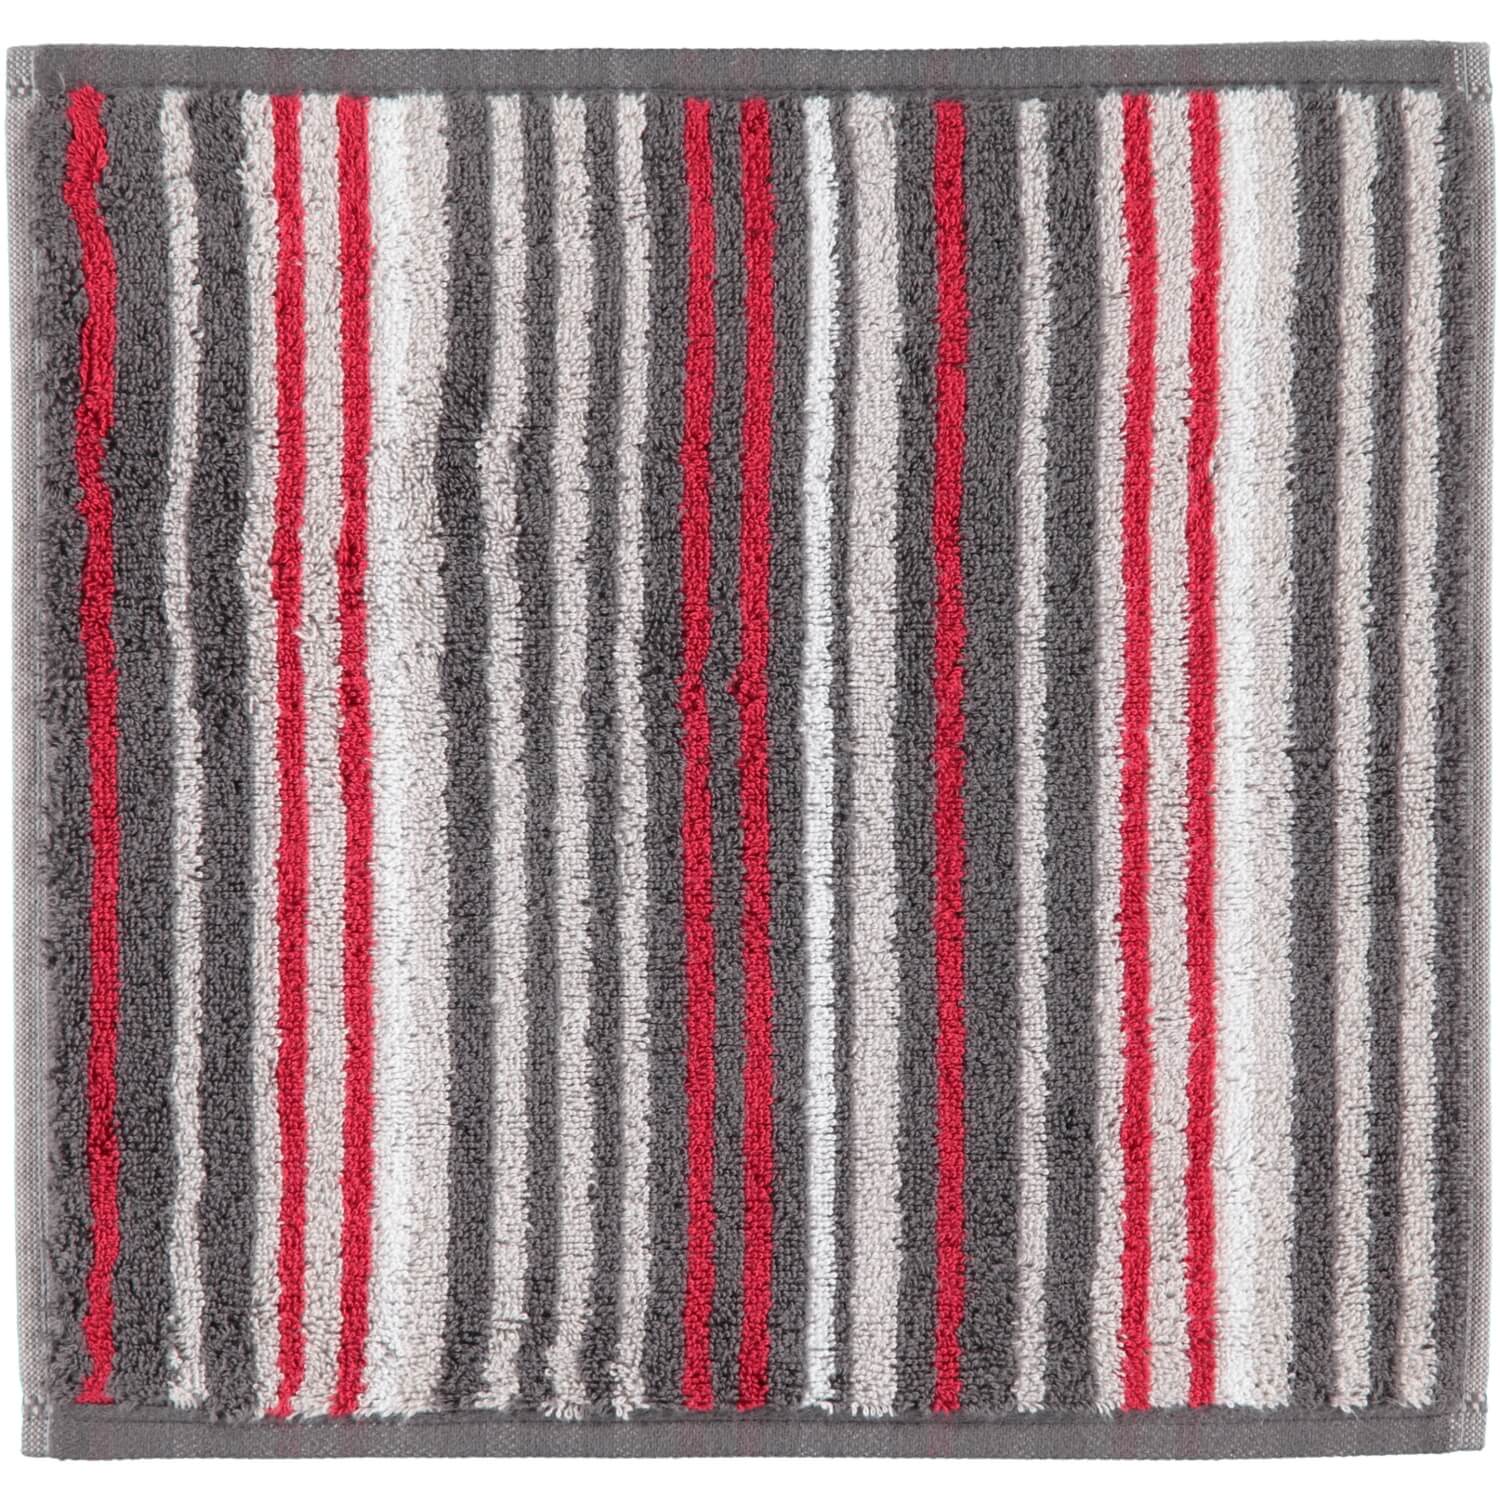 Полотенце премиум класса Avenue Stripes Anthrazit (358-72)